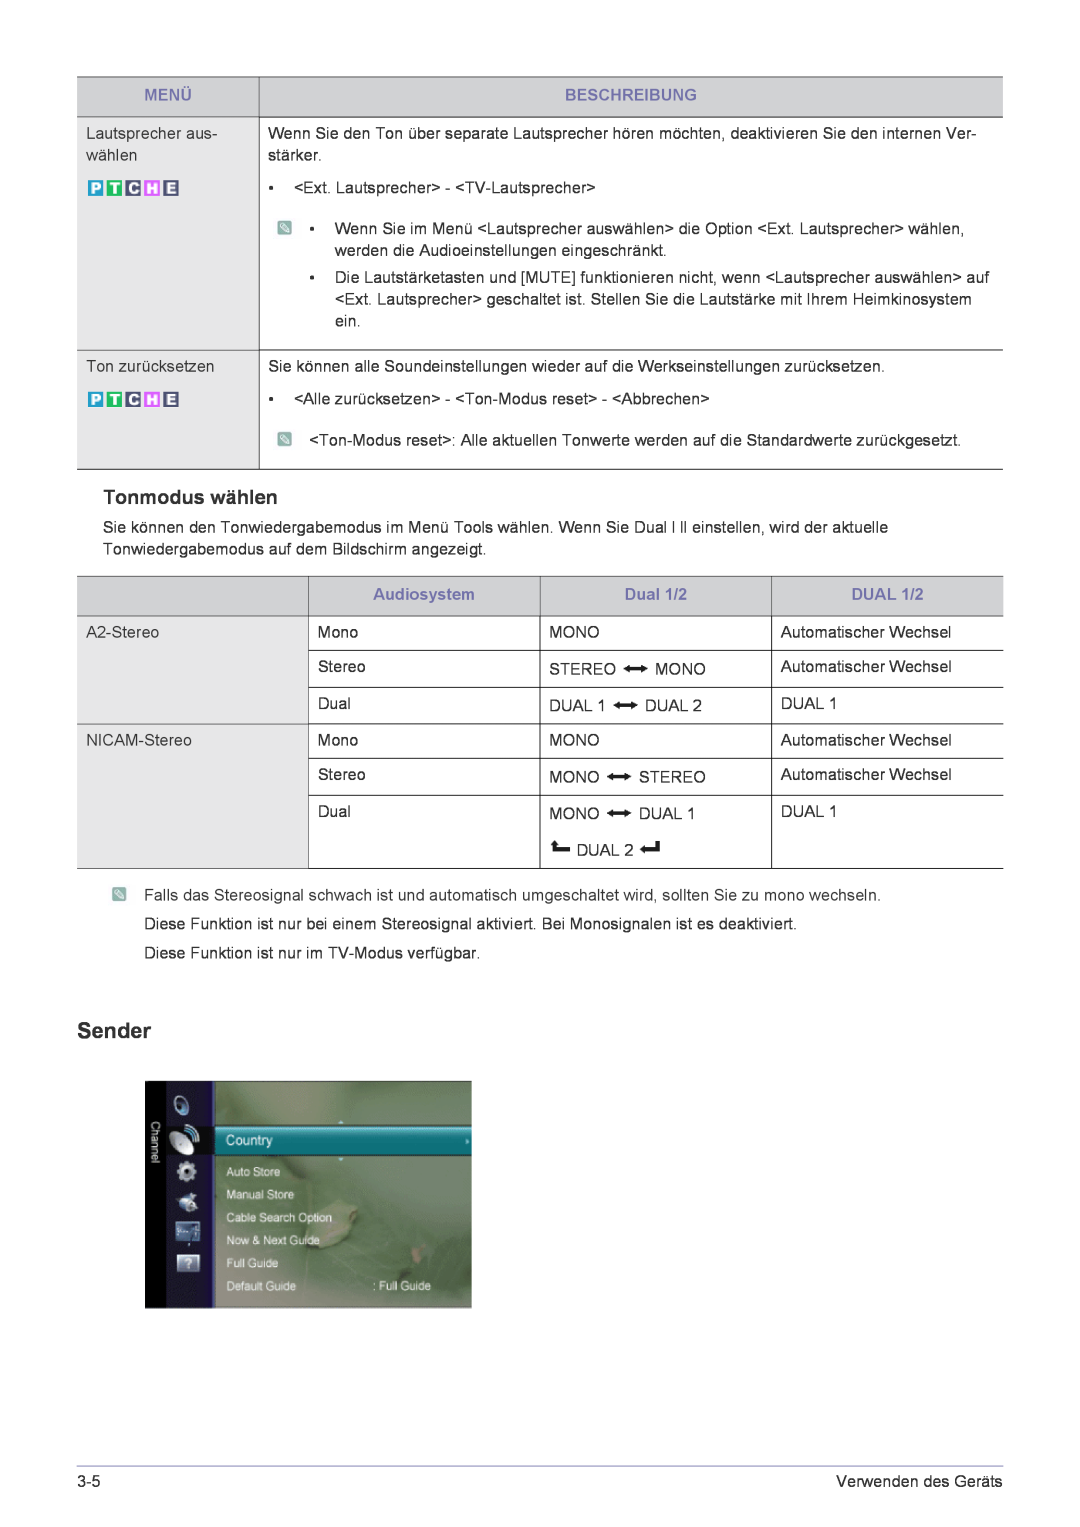 Samsung LS24EMLKF/EN manual Sender, Tonmodus wählen, Audiosystem, Dual 1/2, DUAL 1/2, Menü, Beschreibung 